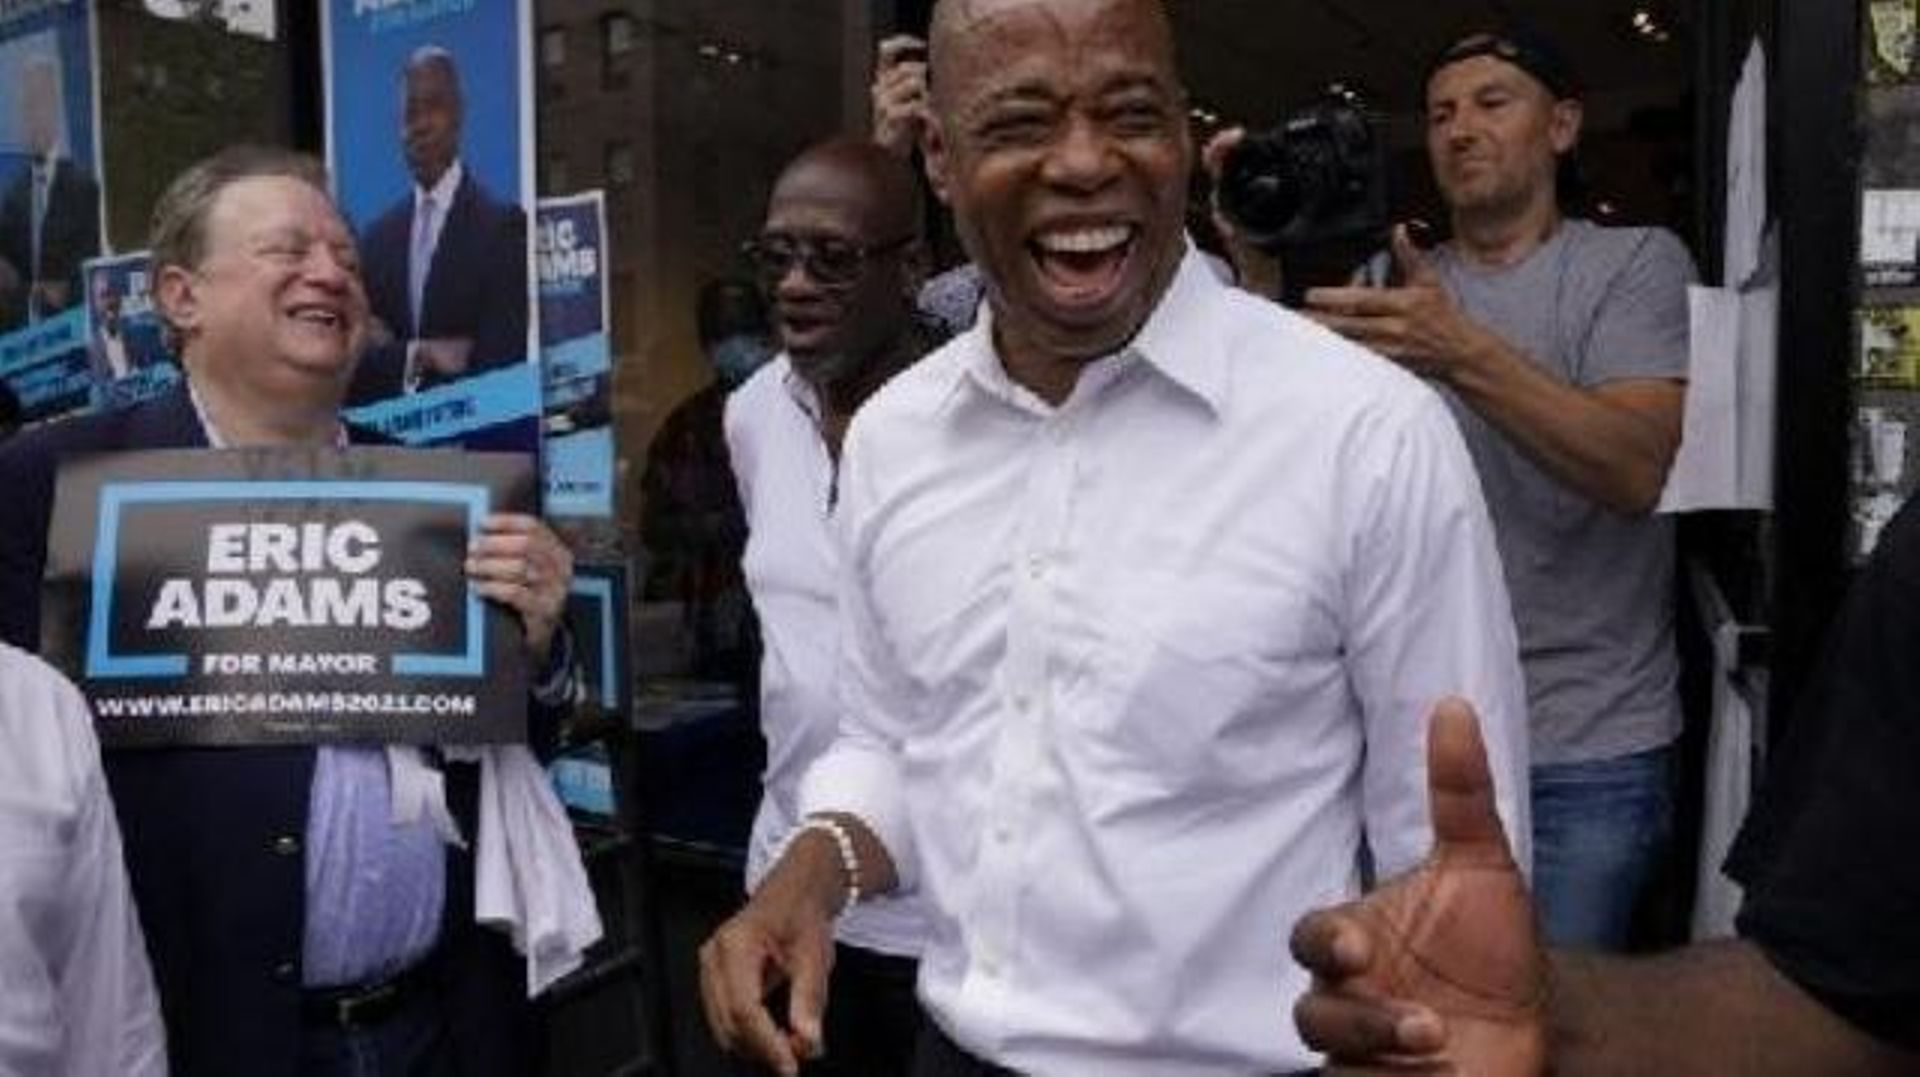 New York: scrutin incertain pour désigner le prochain maire, l'ex-policier Adams favori